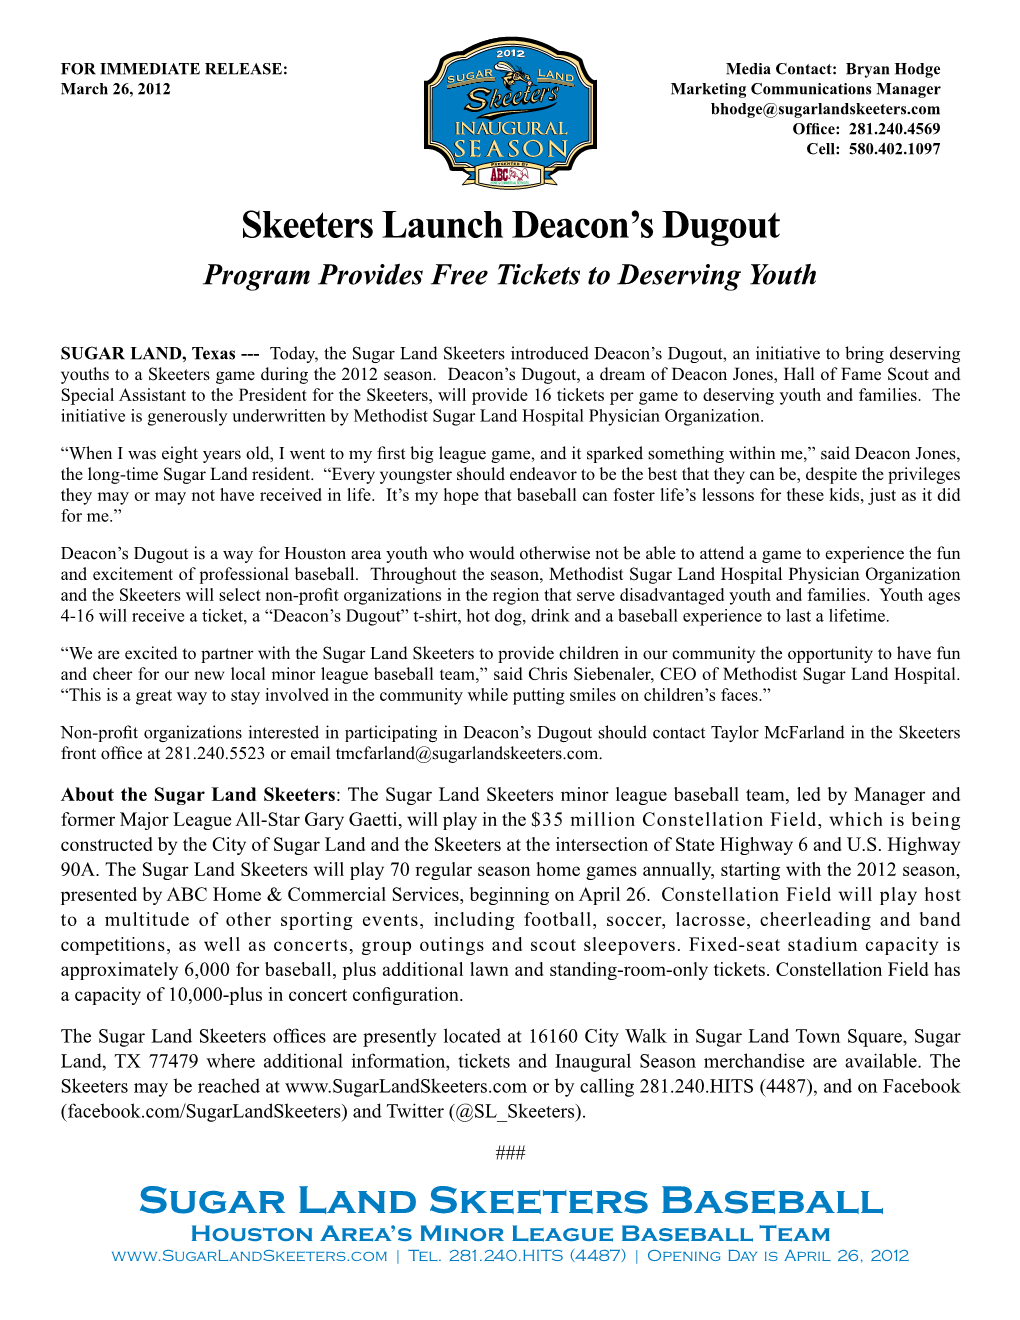 Sugar Land Skeeters Baseball Skeeters Launch Deacon's Dugout